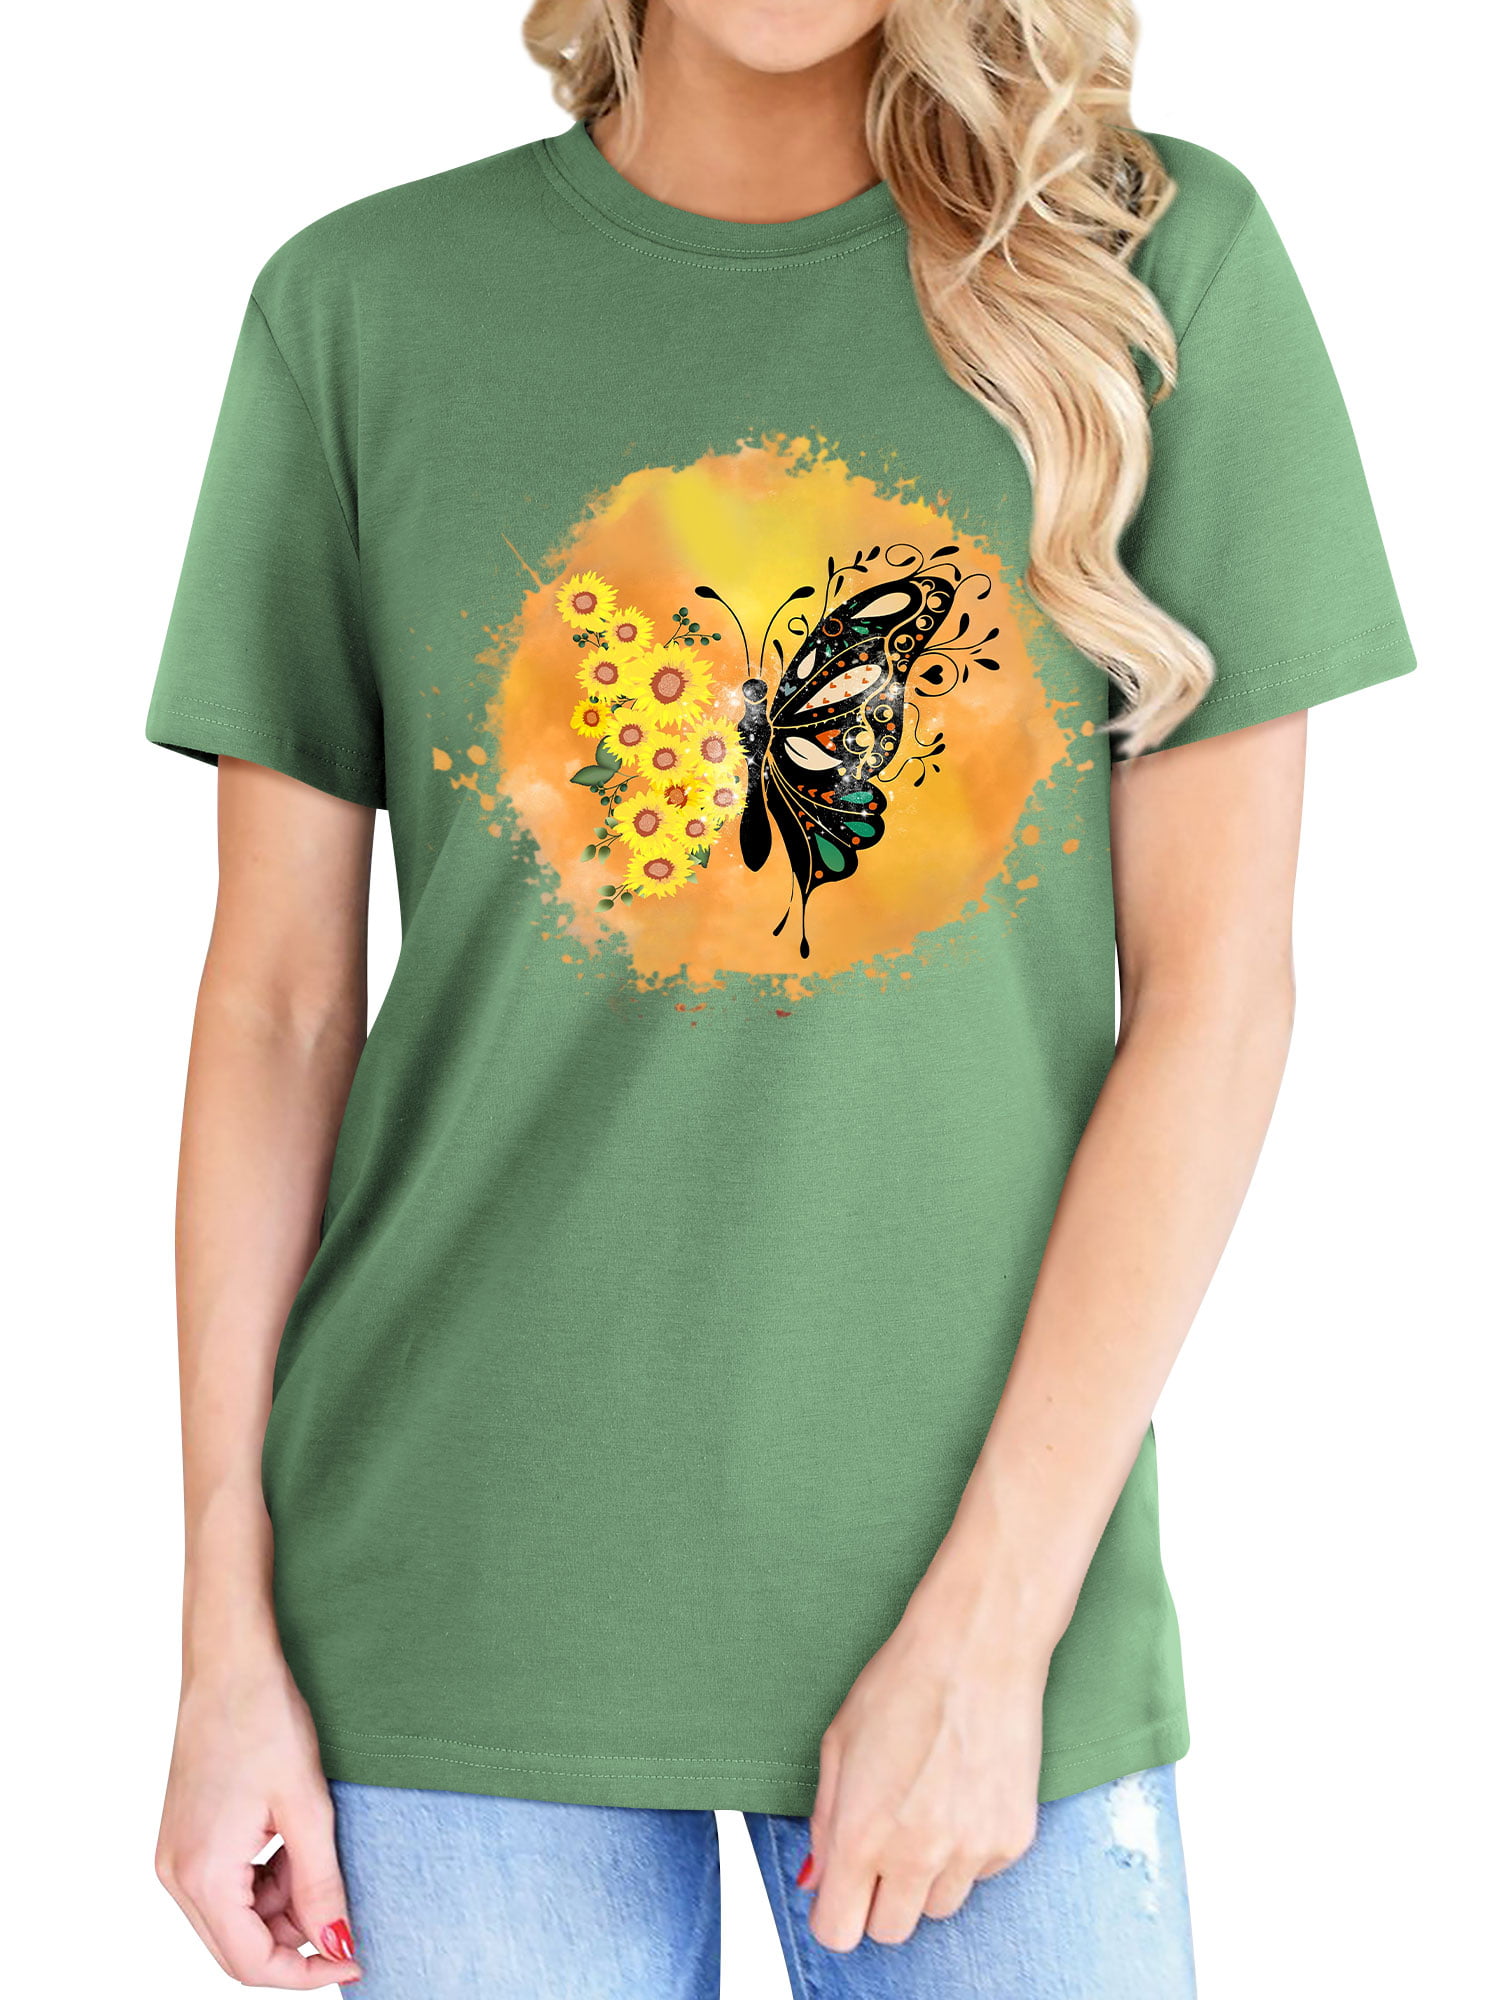 QAFOPEH Women Sunflower Butterfly Print Round Neckline Short Sleeve T-Shirt